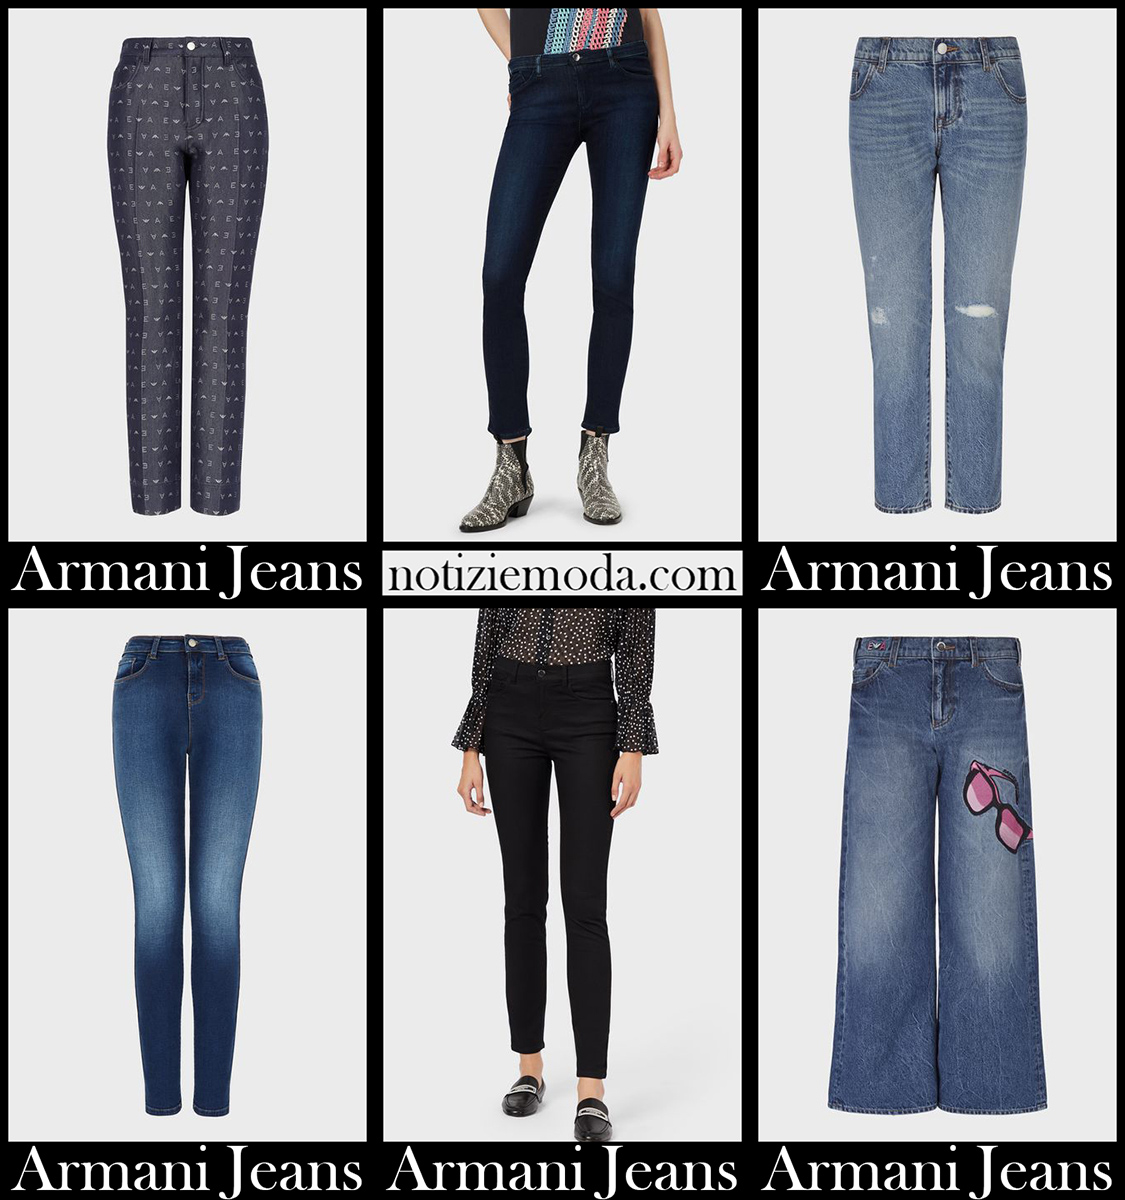 Nuovi arrivi jeans Armani 2021 abbigliamento denim donna